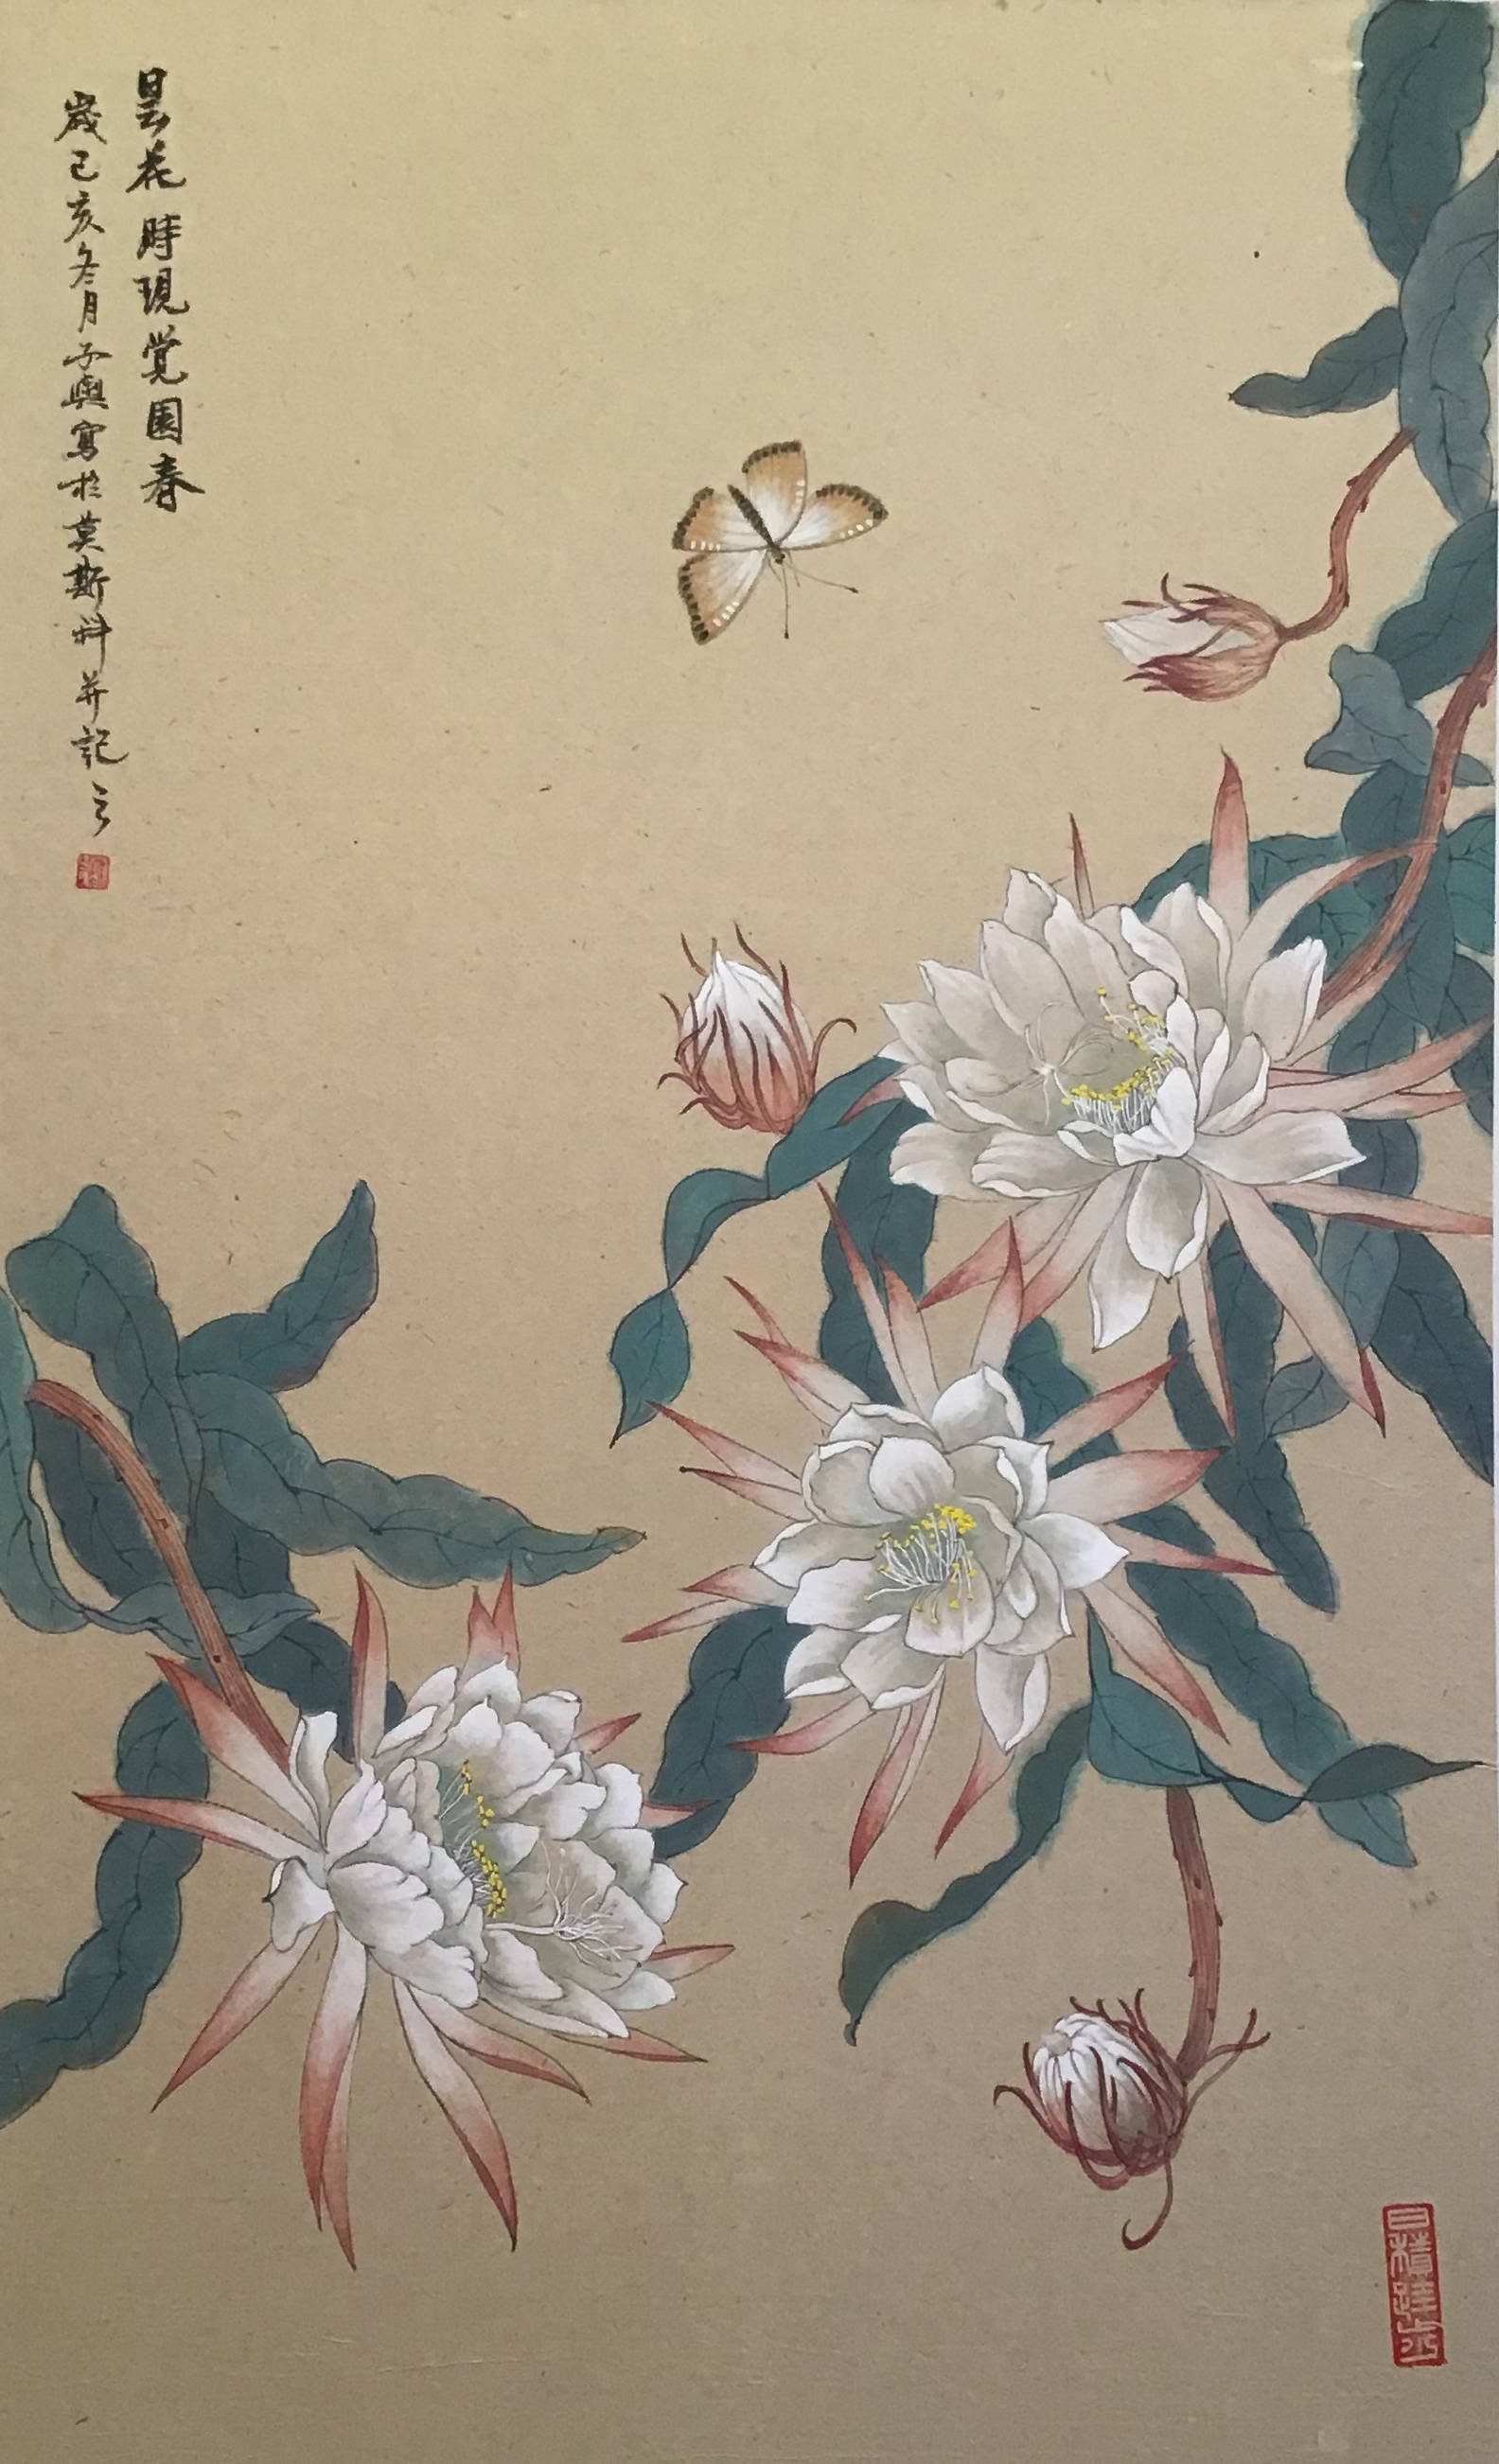 刘子舆以学贯中西的美学修养,突破了中国工笔画的古典写实,开创出一种